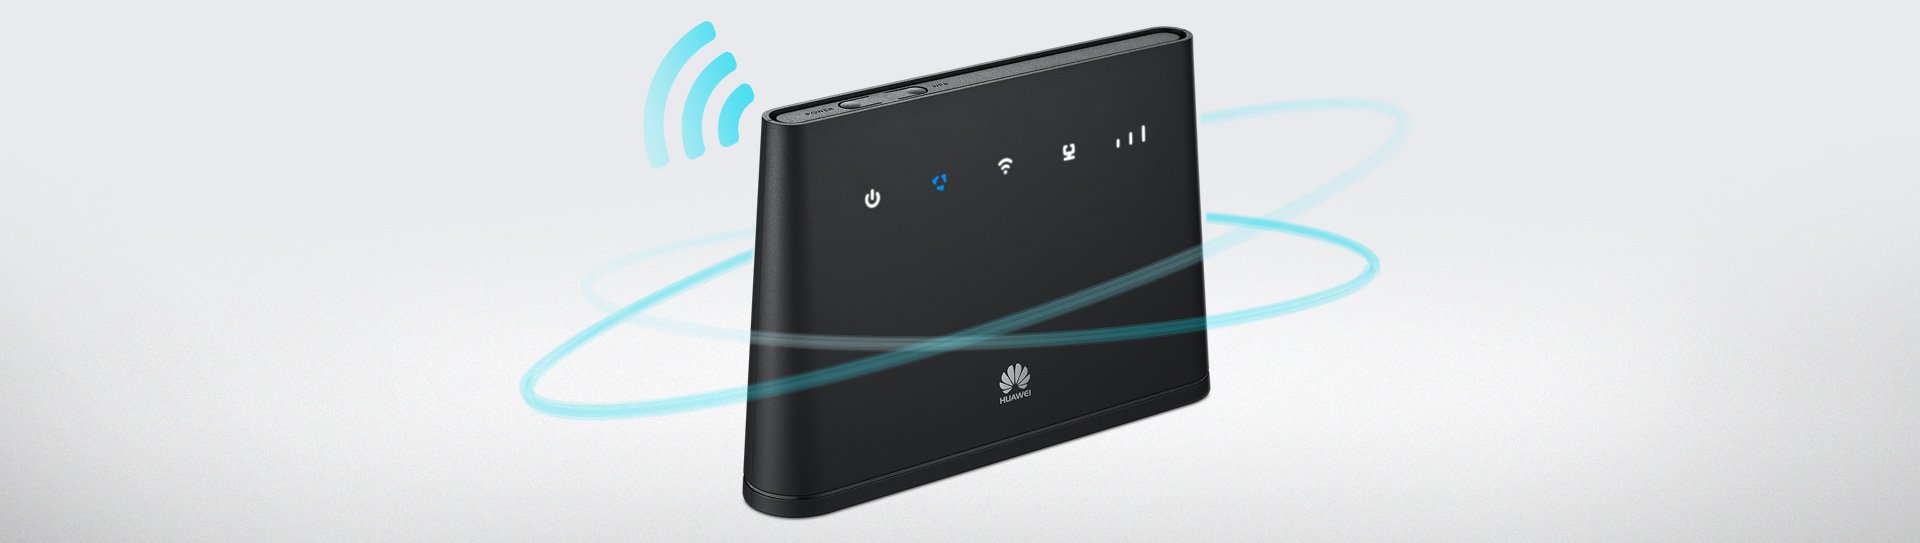 Huawei-B310-wifi